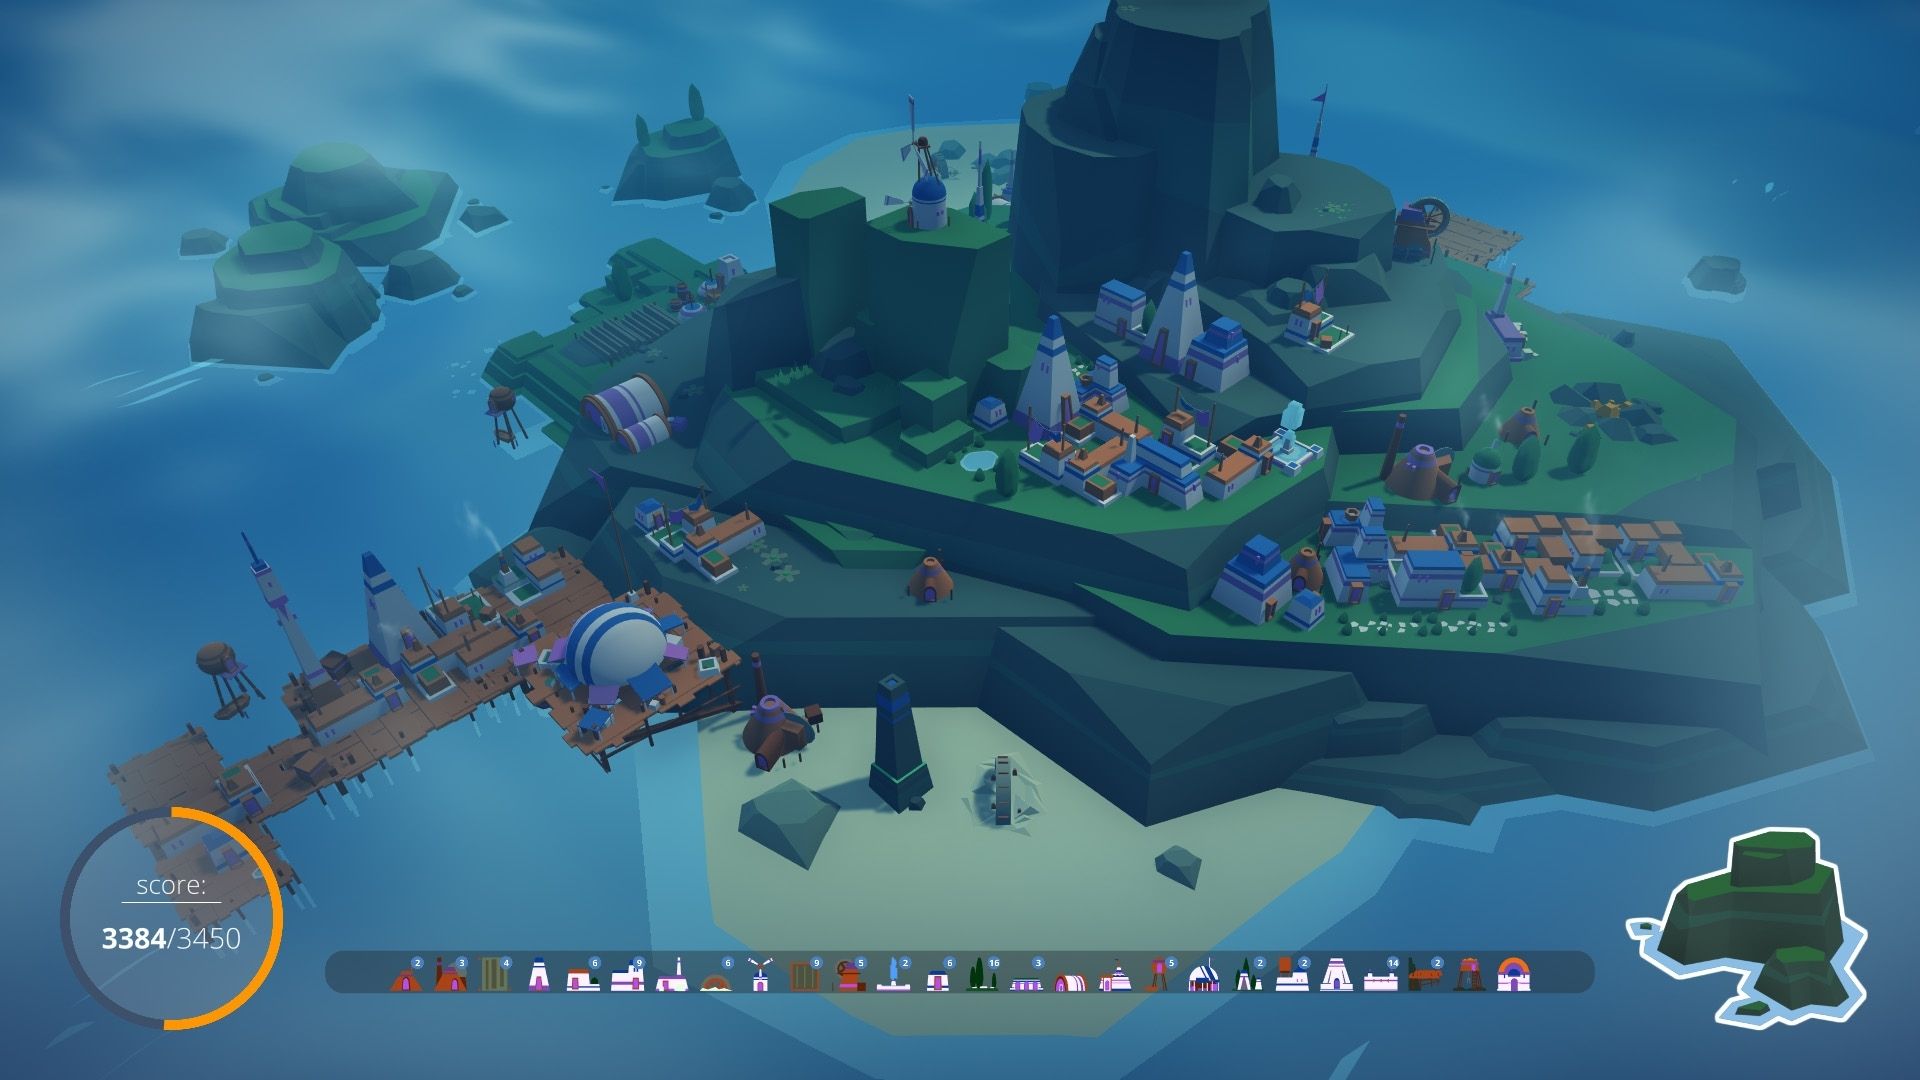 Una captura de pantalla de los isleños, que muestra una gran isla con algunas casas y un puerto